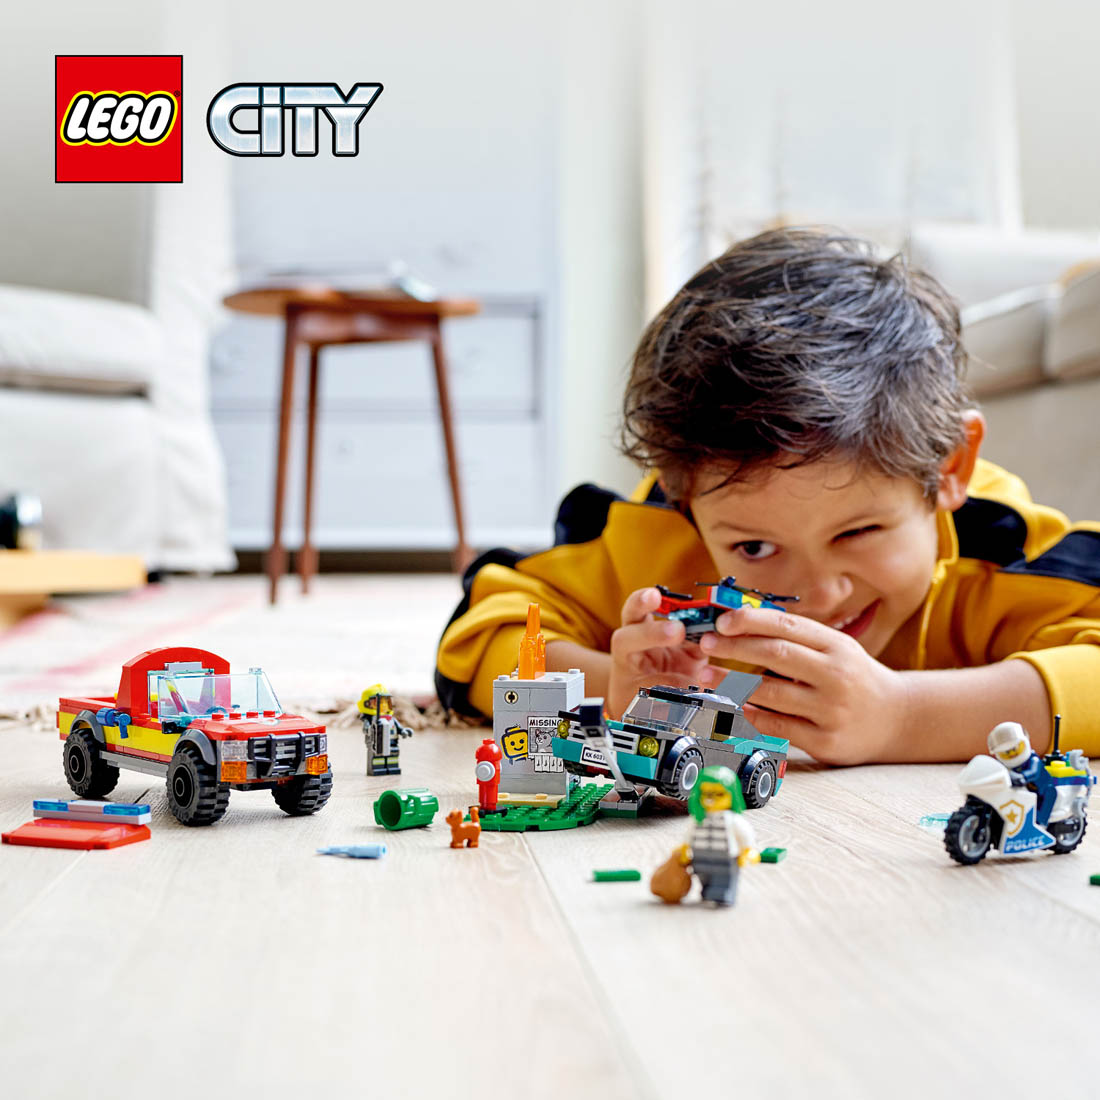 LEGO® City TV temalı itfaiye ve polis oyun seti